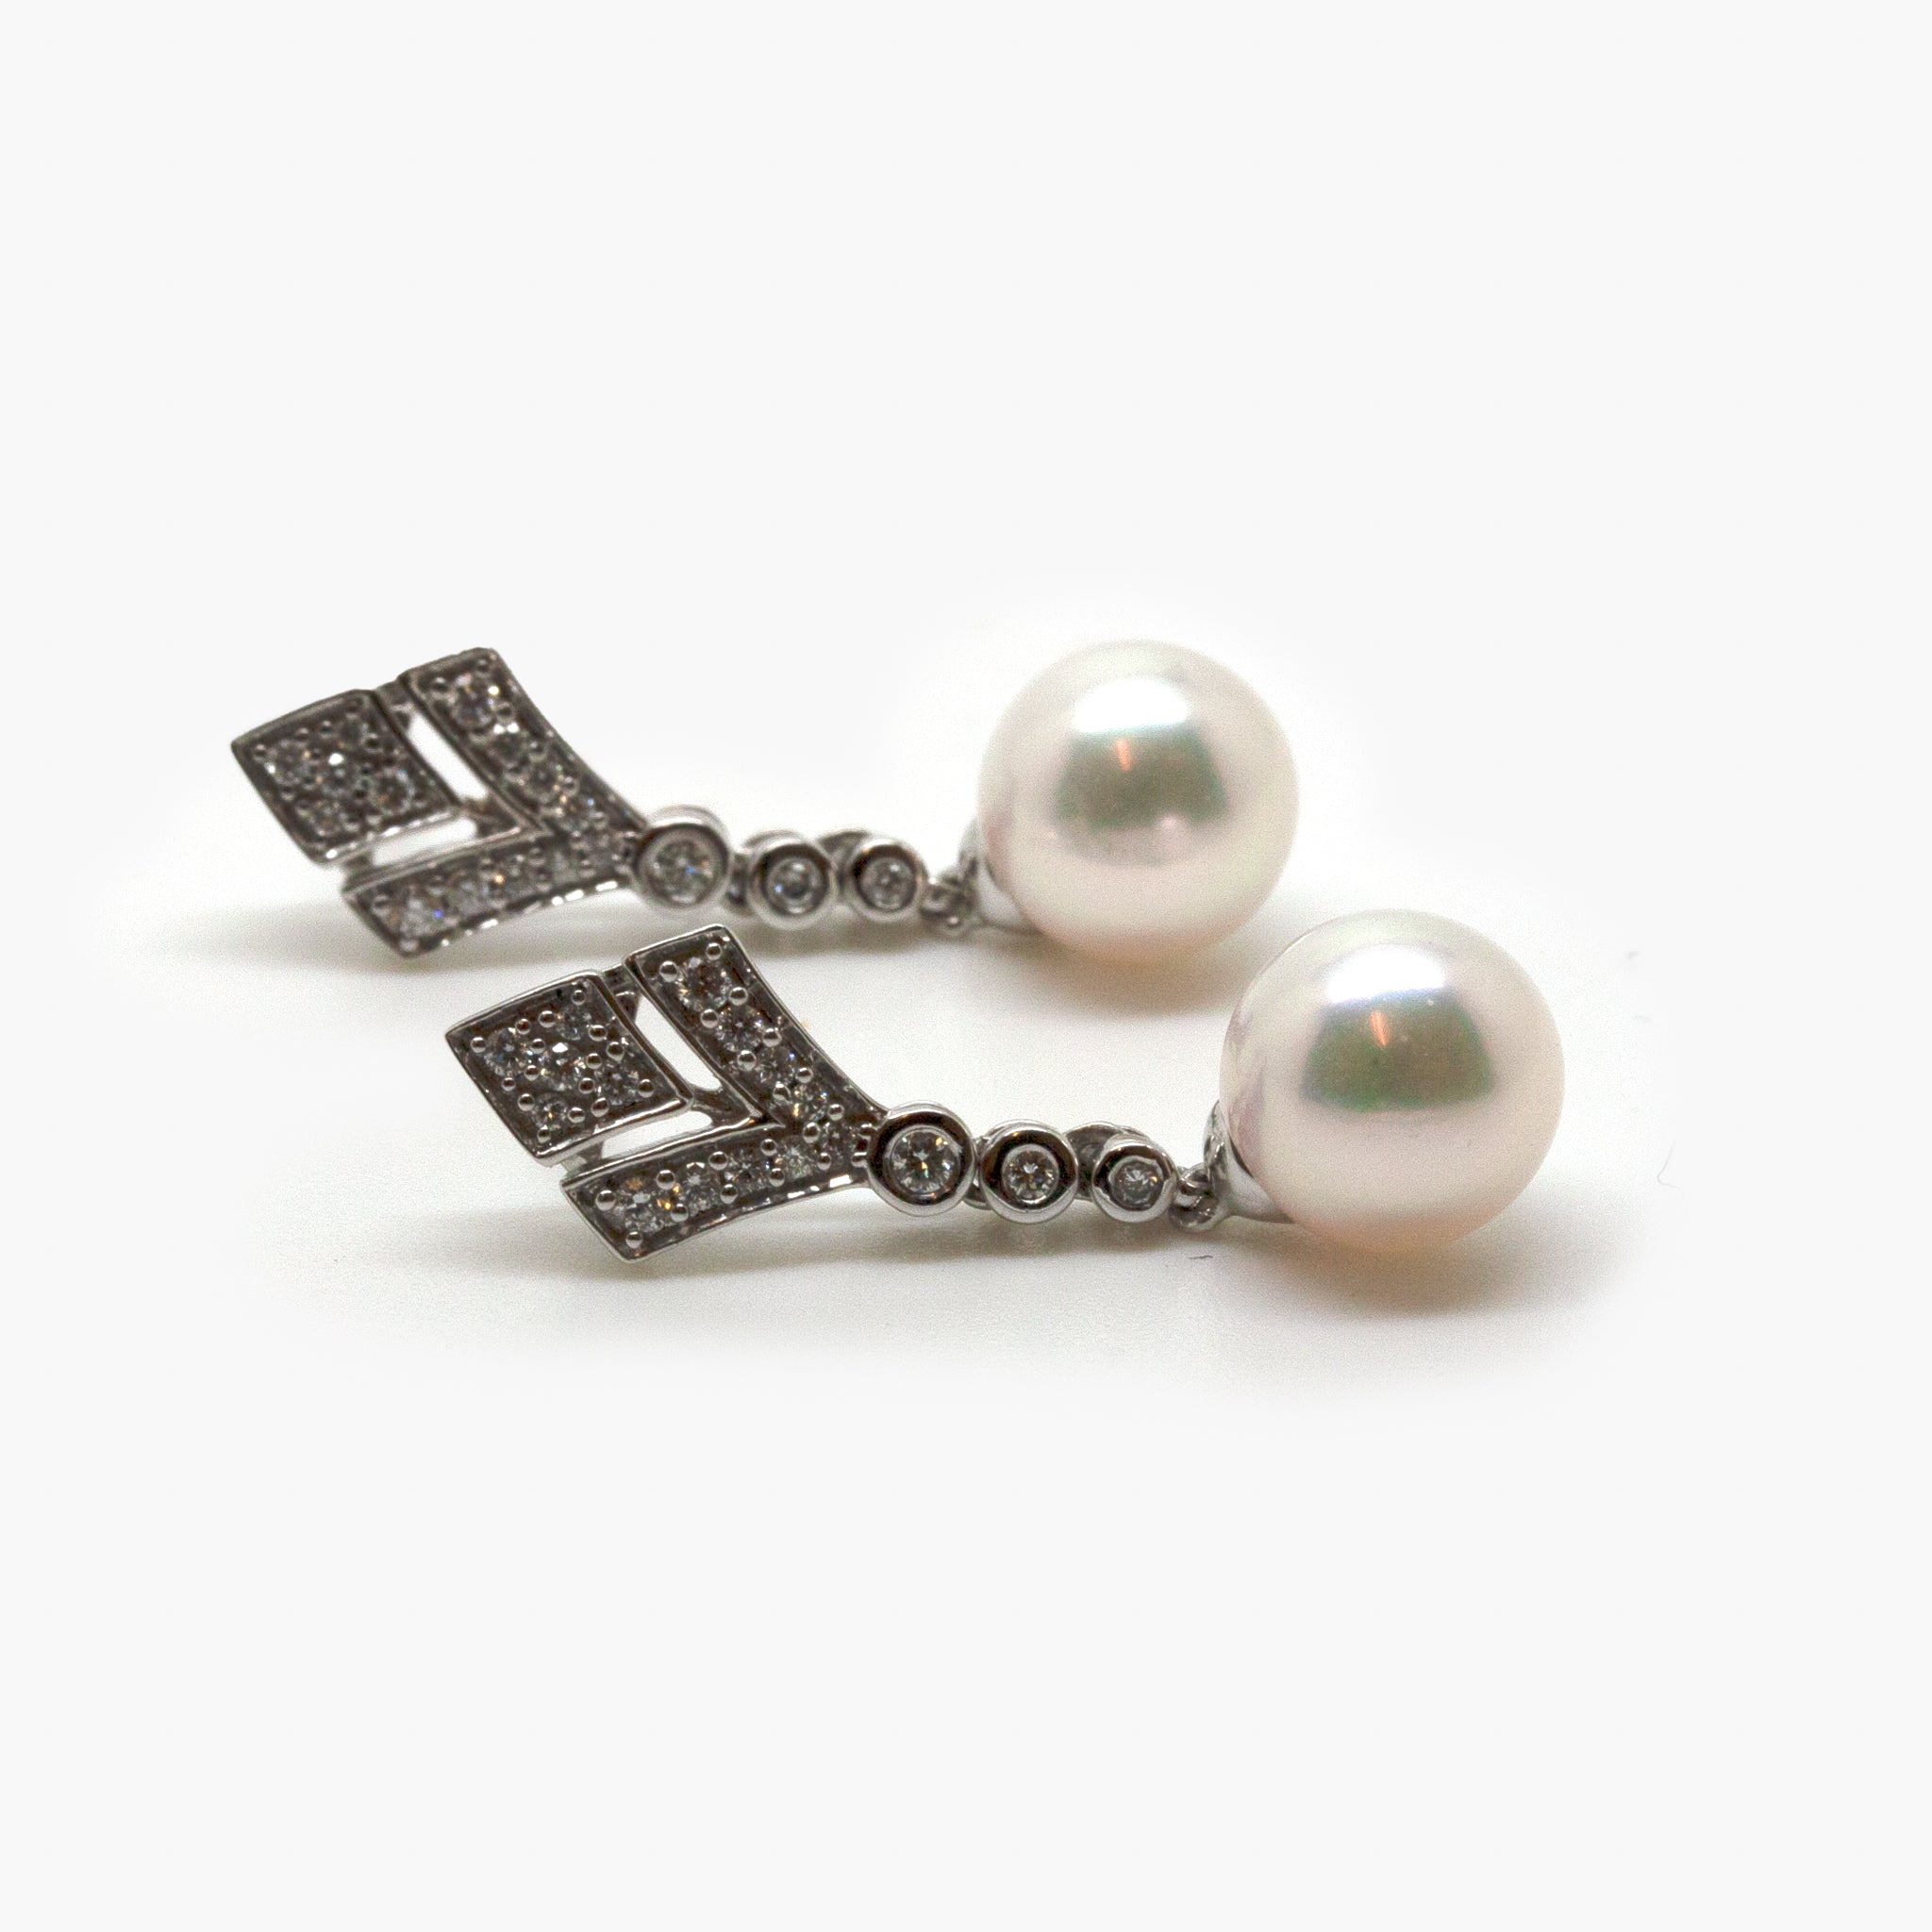 18 Carat White Gold Pearl & Diamond Drop Earrings - Jordans Jewellers